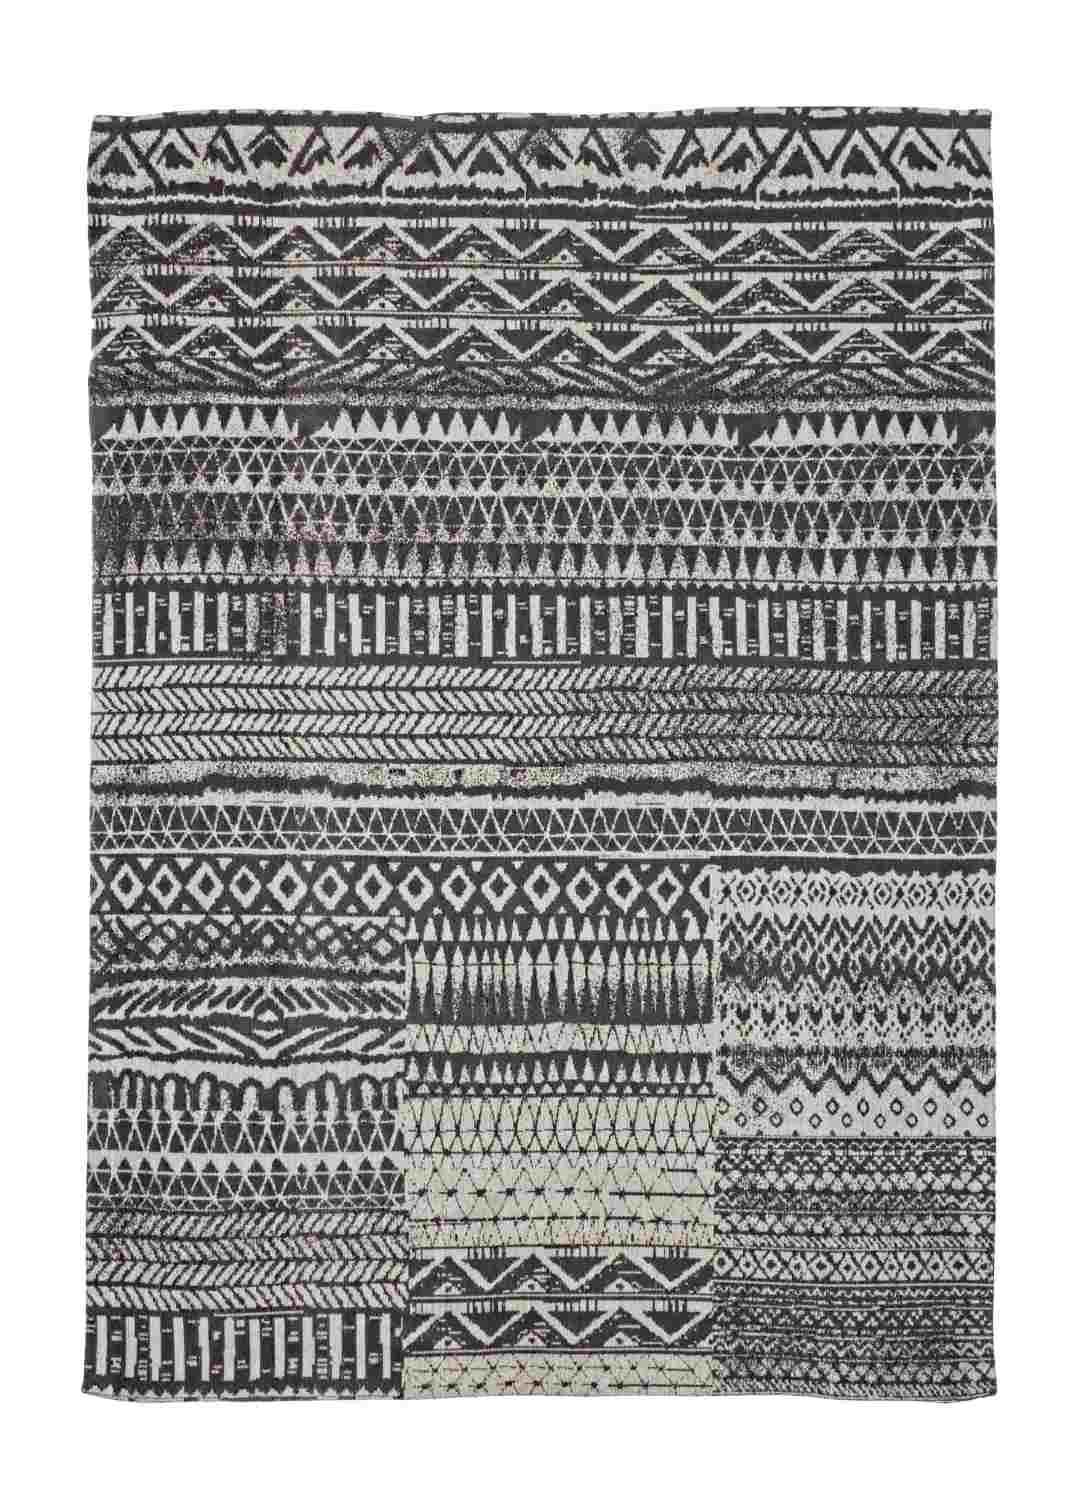 Der Teppich Algeri überzeugt mit seinem klassischen Design. Gefertigt wurde er aus Chenille und Polyester. Der Teppich besitzt einen dunkelgrauen Farbton und die Maße von 140x200 cm.